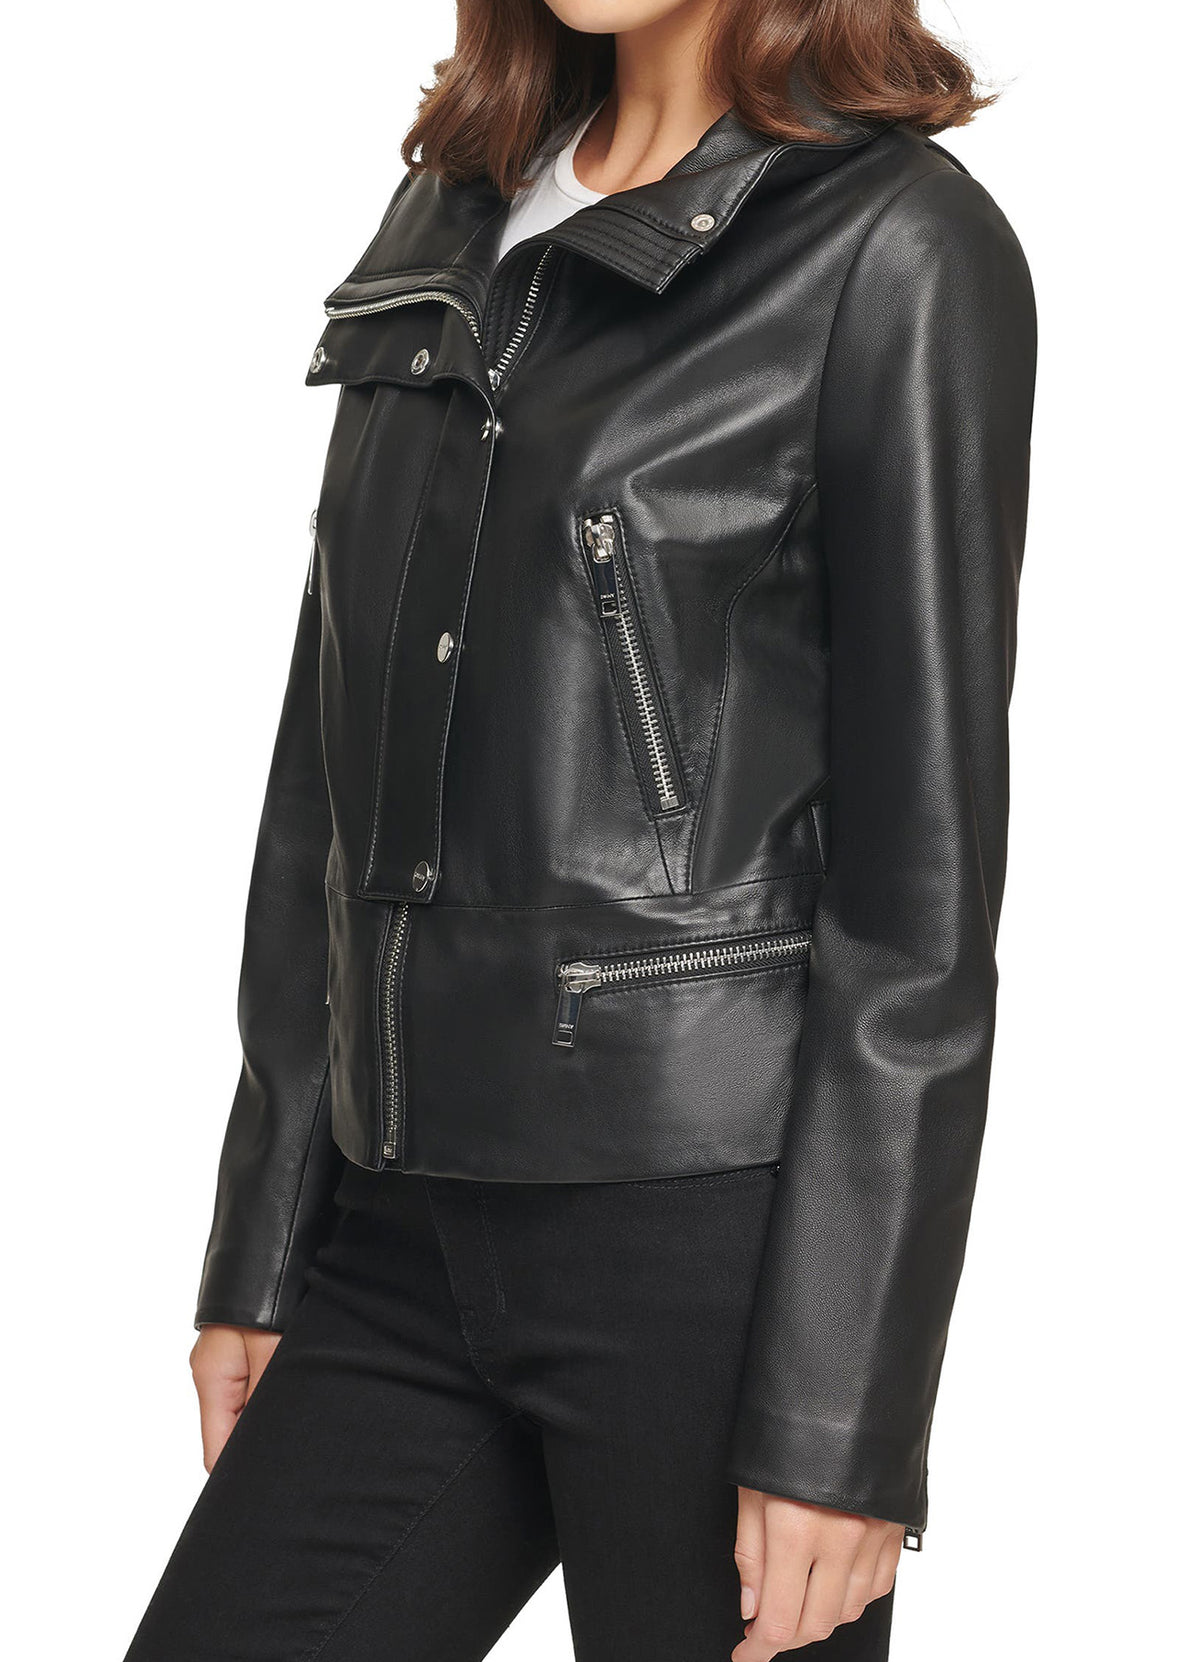 Womens Stylish Black Leather Jacket | Shop Now!